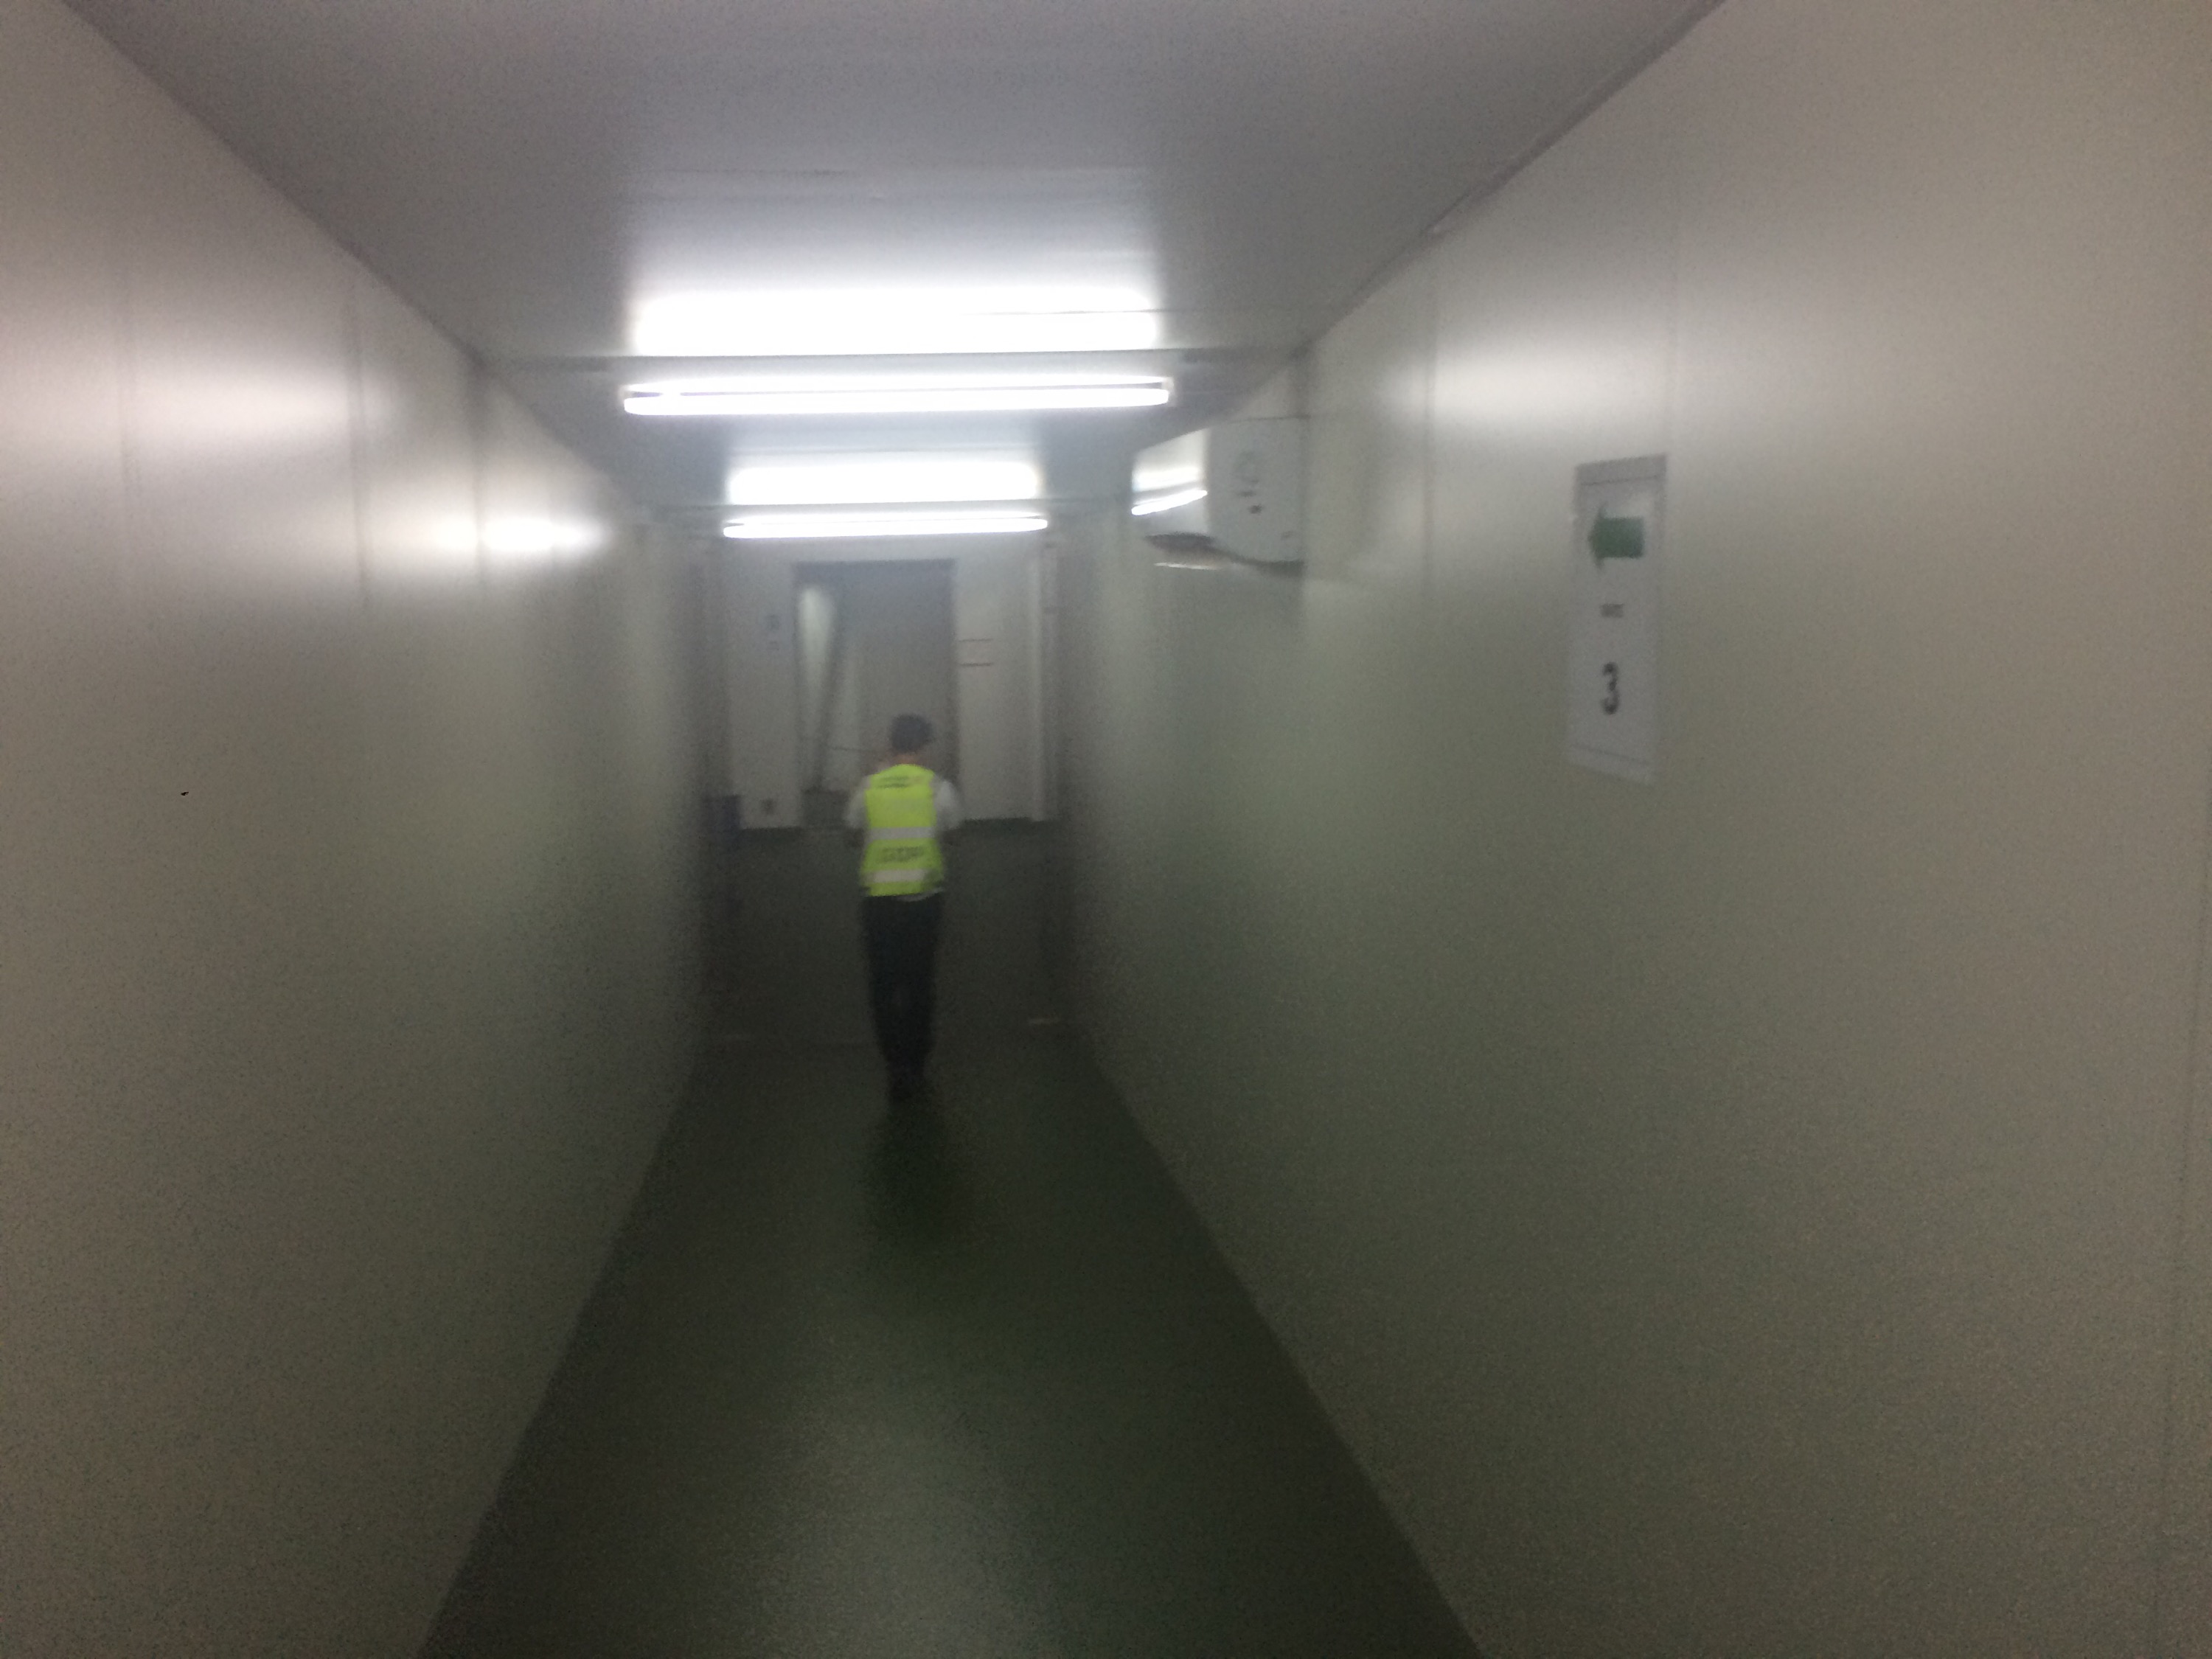 a man walking in a hallway